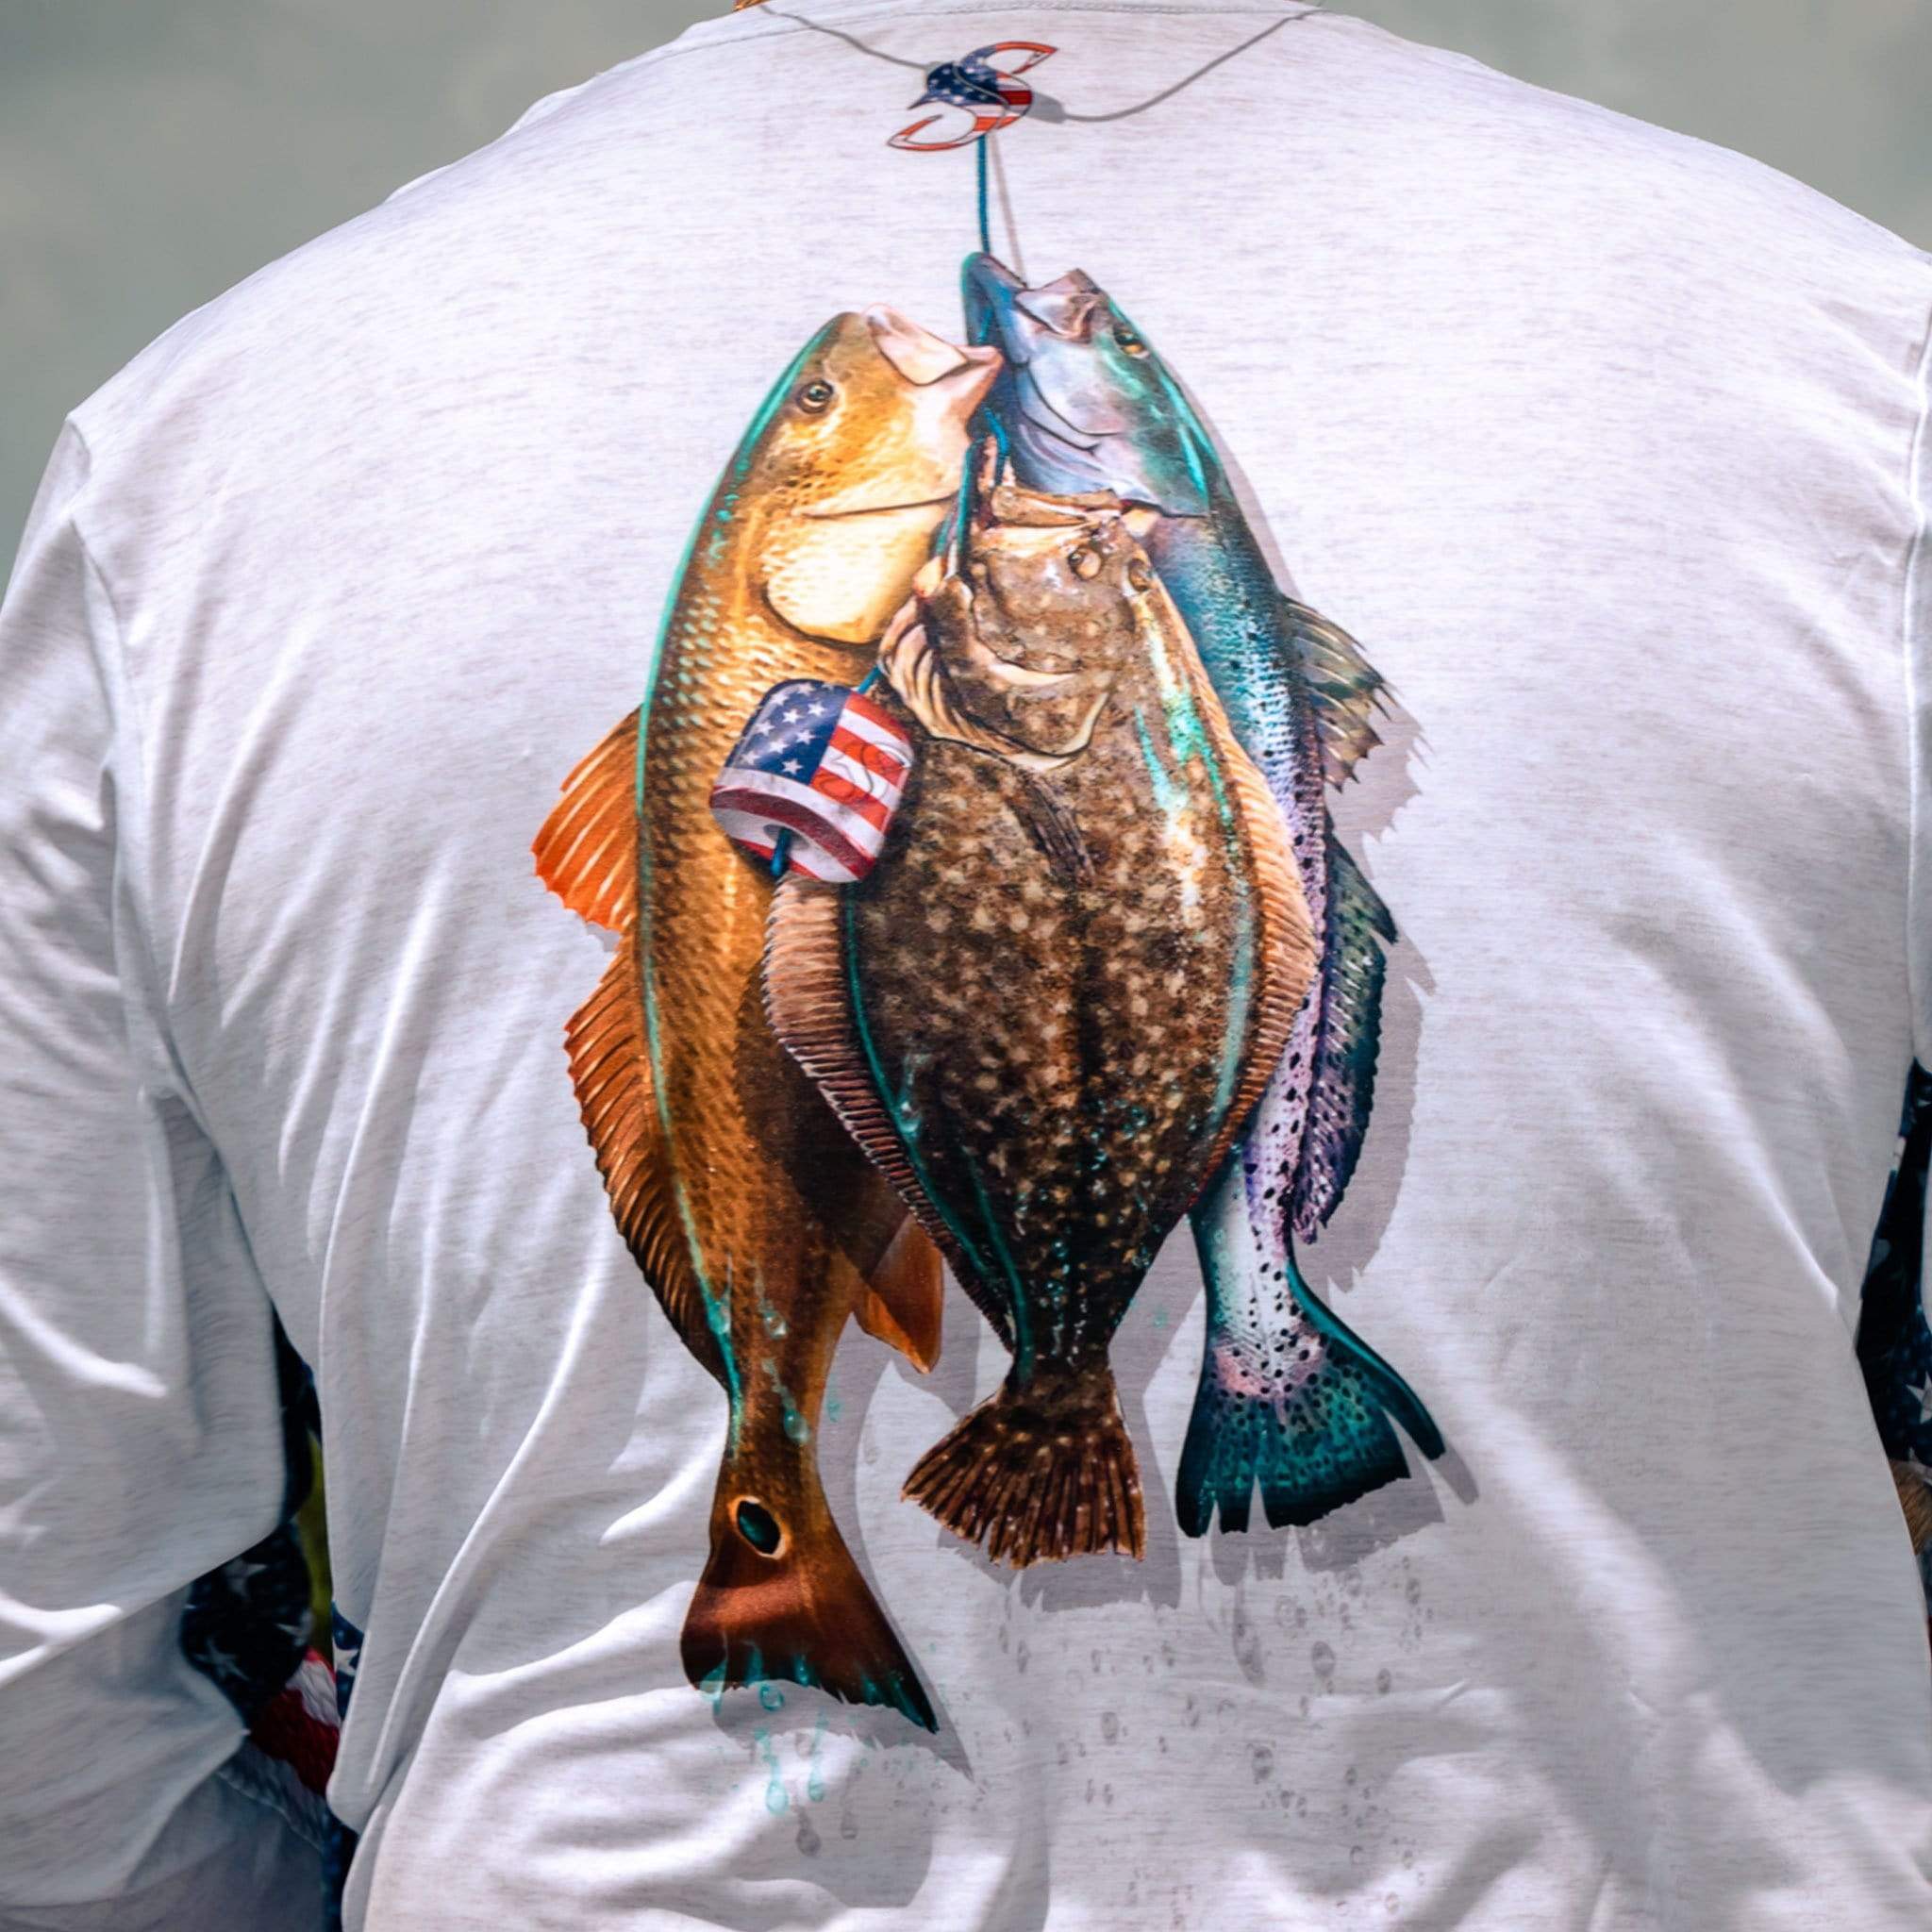 Fishing T Shirt For Men Smallmouth Bass T-Shirt Fishing Apparel